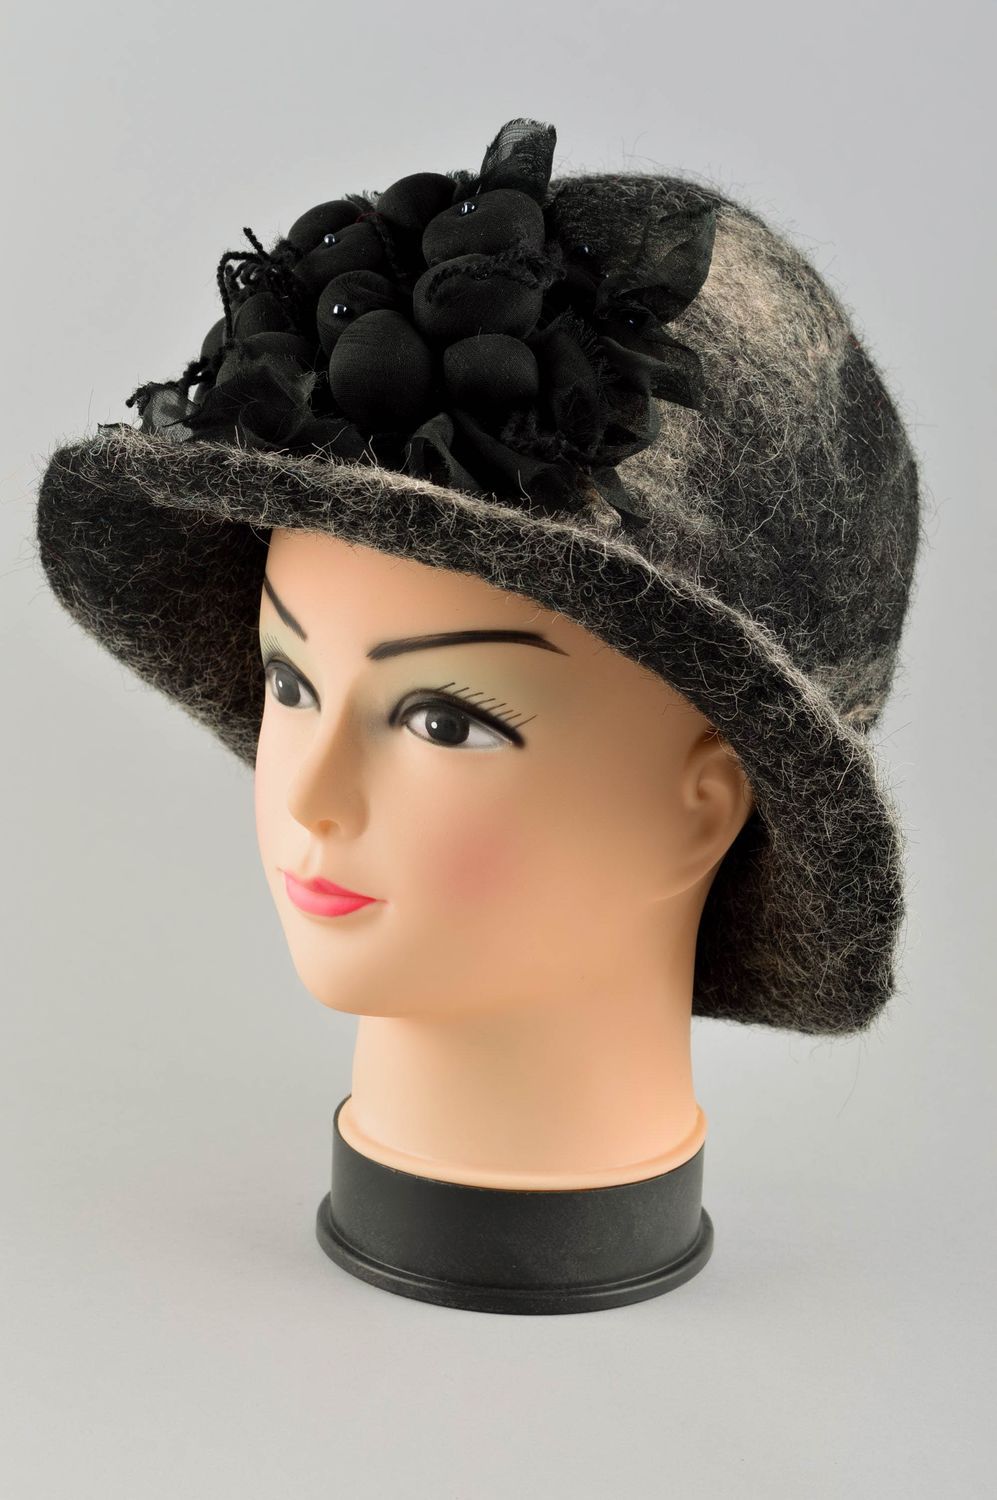 Handmade felt hat with brims winter accessories women hat designer stylish hat photo 2